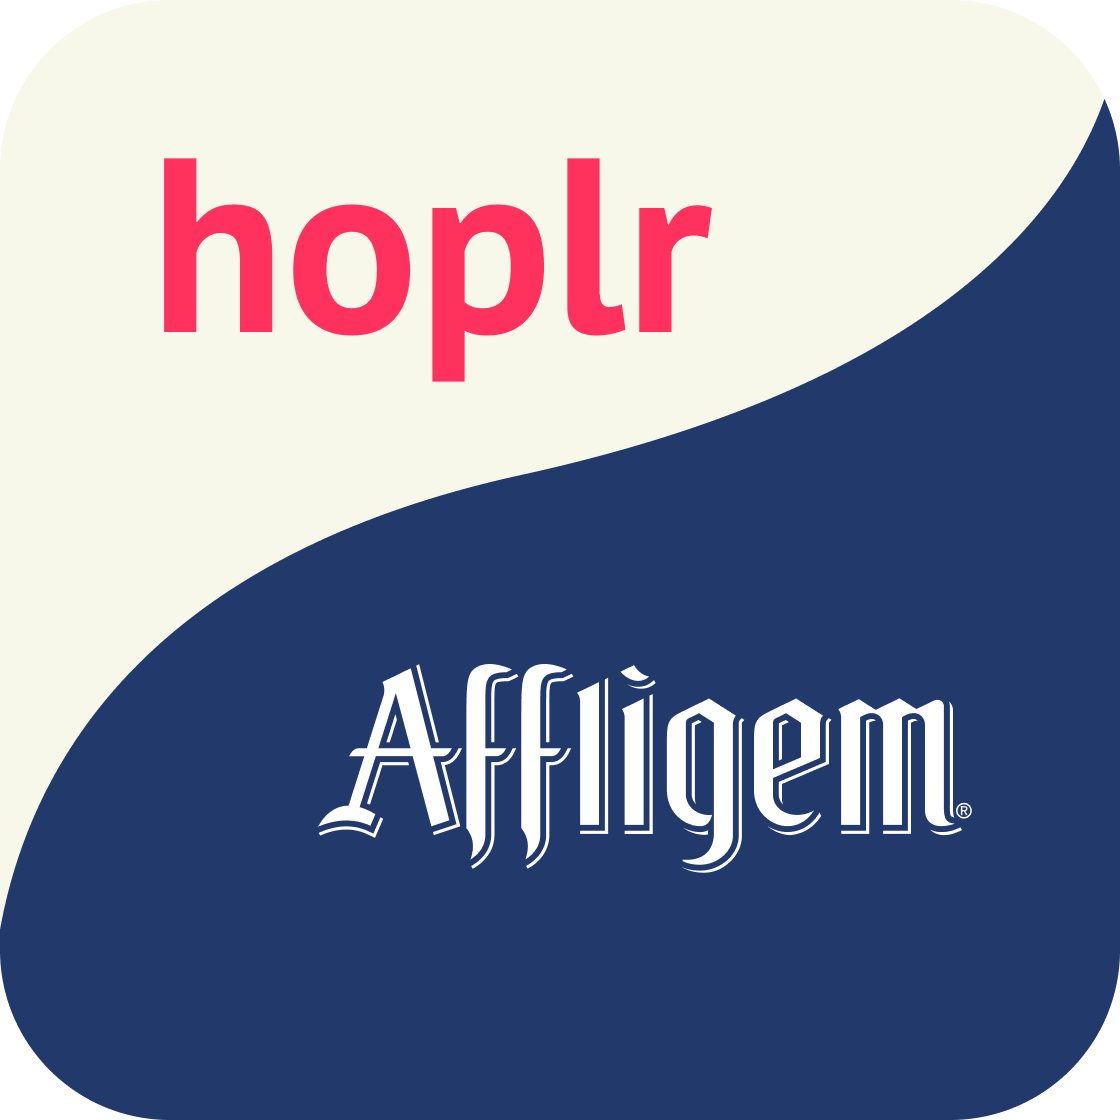 the icon logo of Hoplr - Affligem